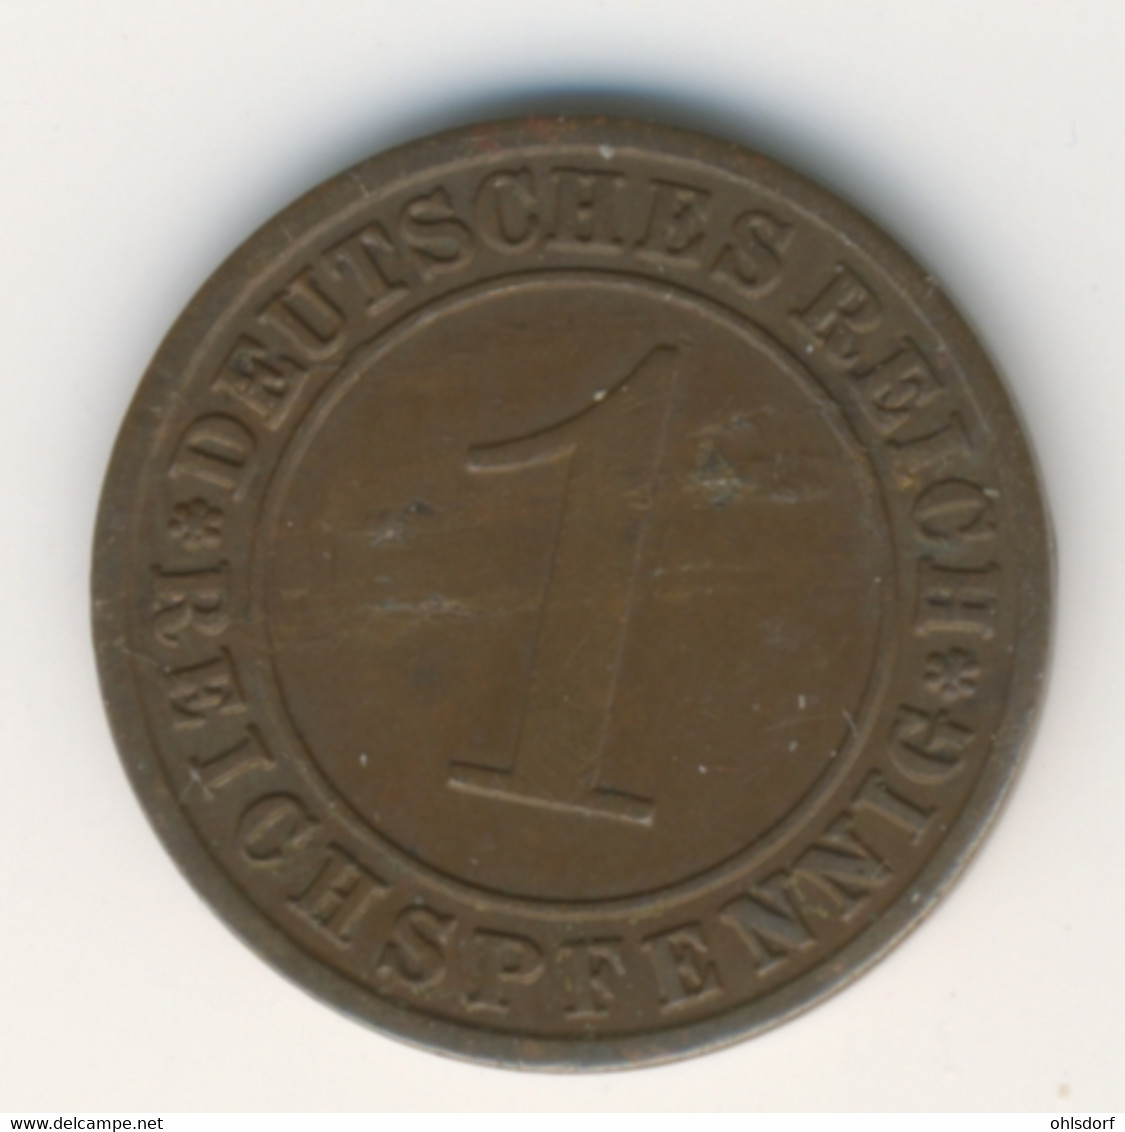 DEUTSCHES REICH 1930 F: 1 Reichspfennig, KM 37 - 1 Rentenpfennig & 1 Reichspfennig